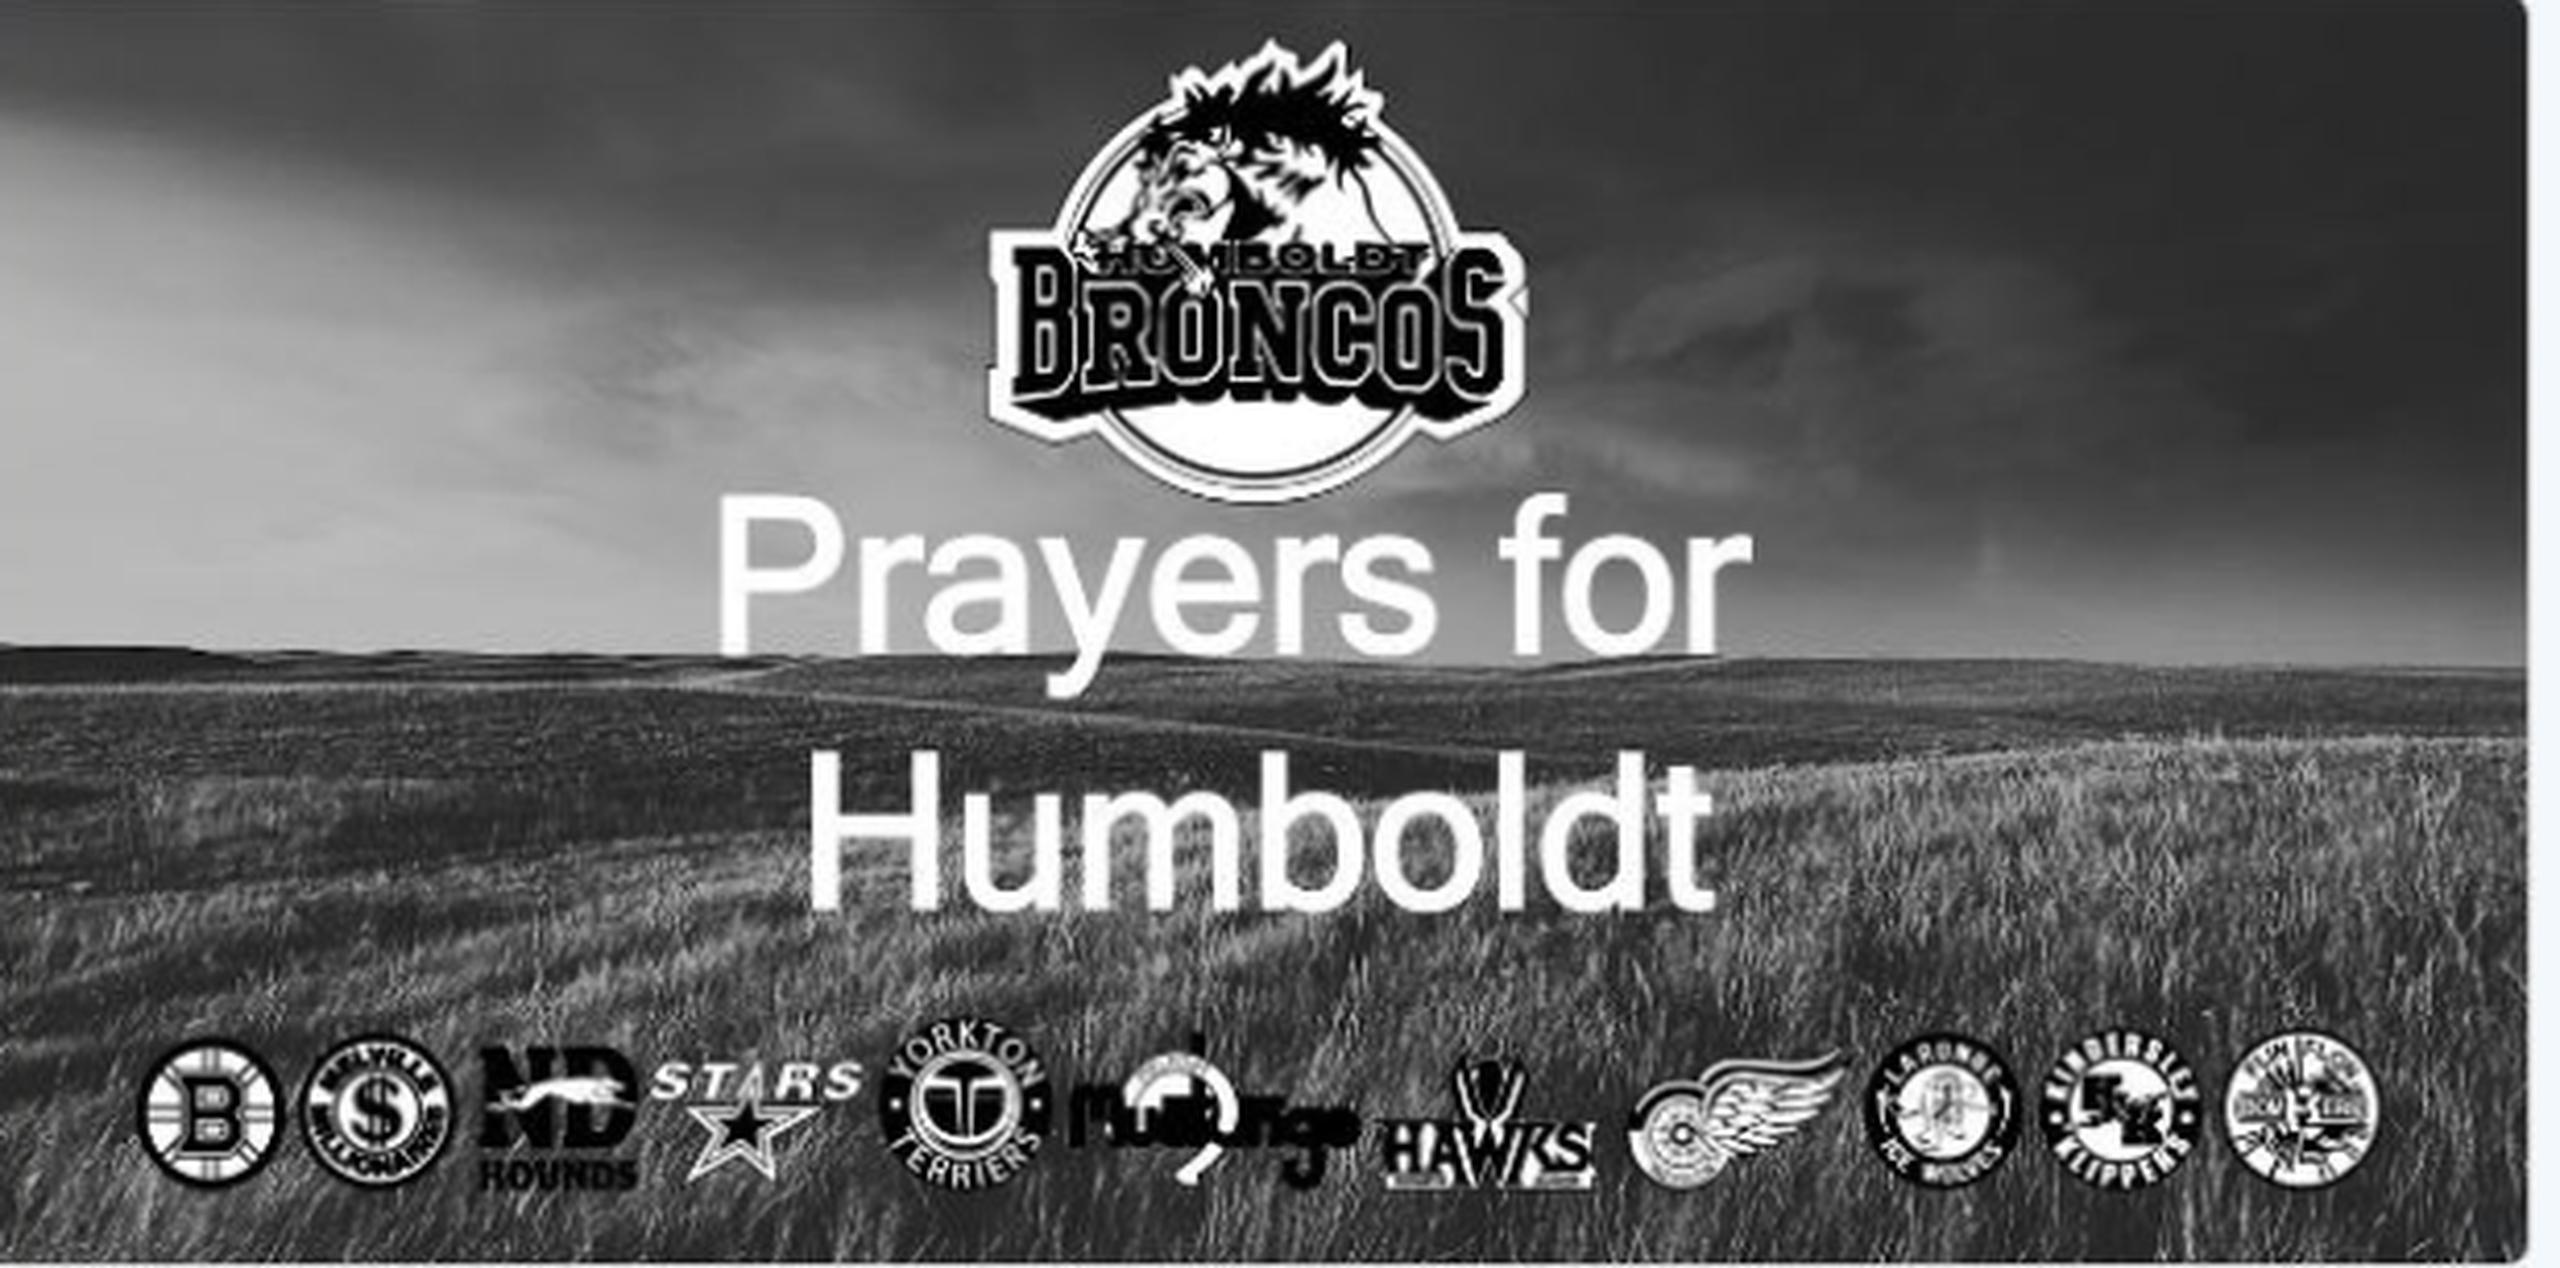 El vehículo transportaba al equipo Humboldt Broncos de la Liga Juvenil de Hockey de Saskatchewan. (Twitter)